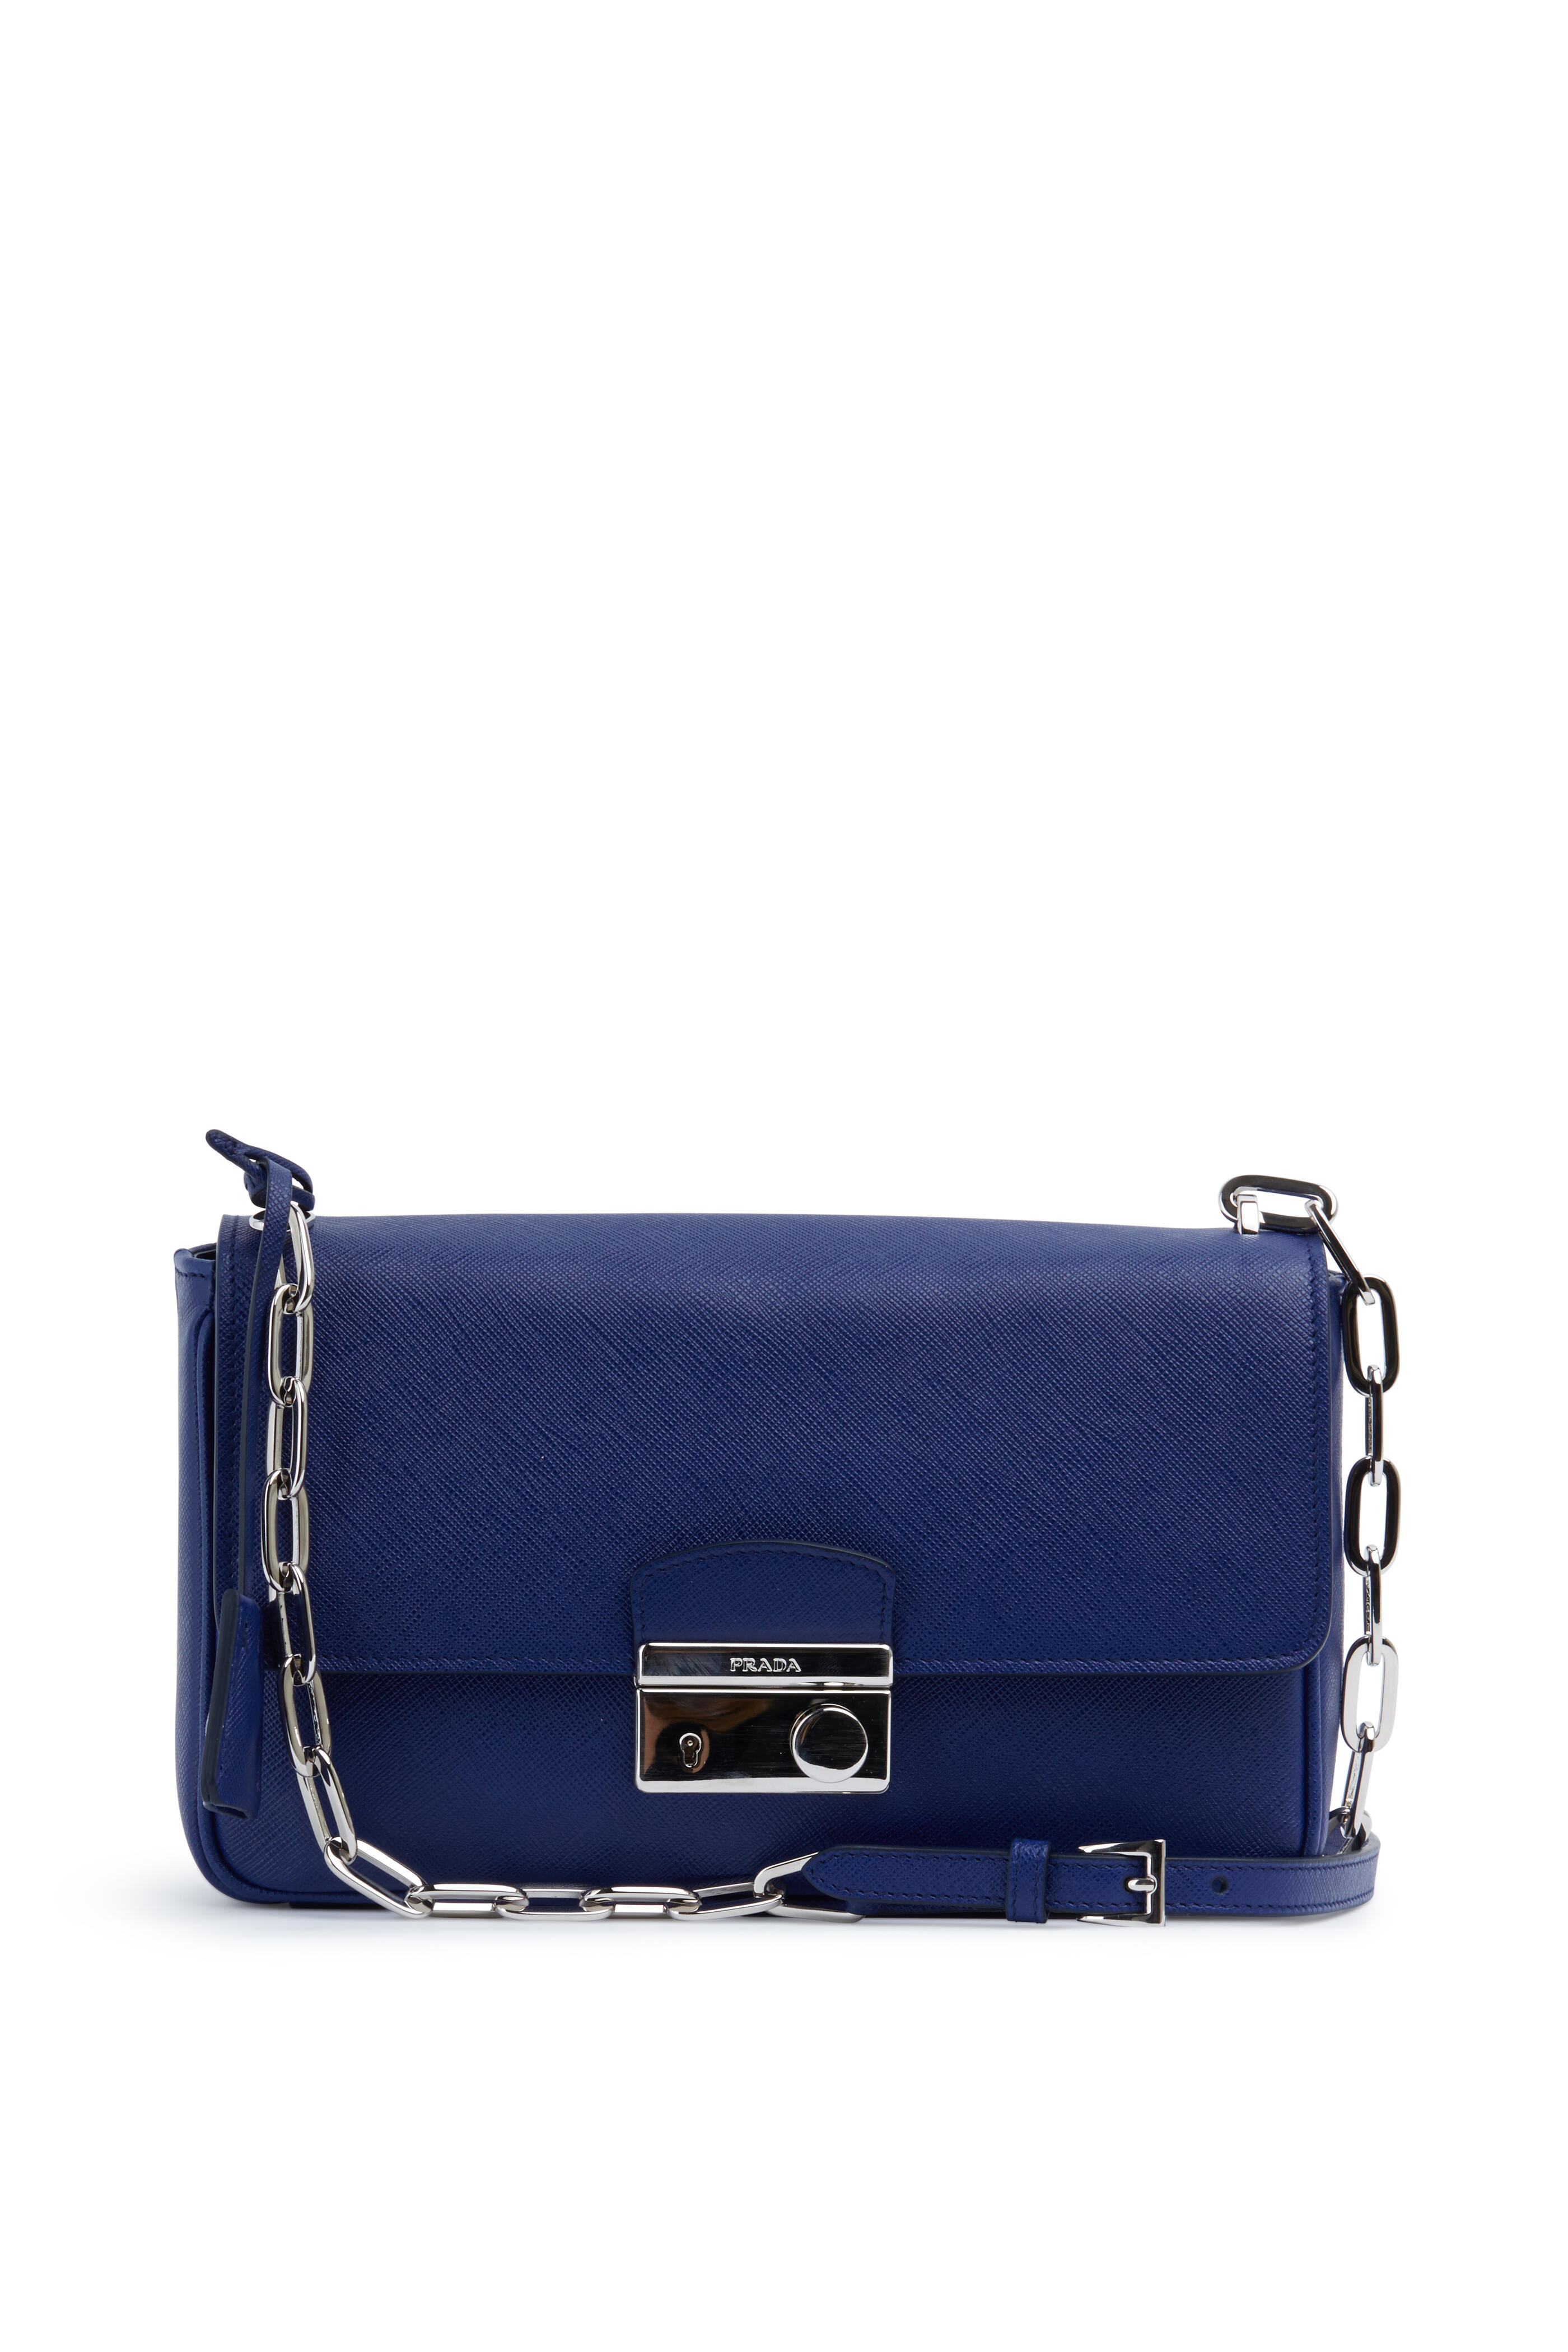 Prada Pebble Leather Shoulder Bag Blue